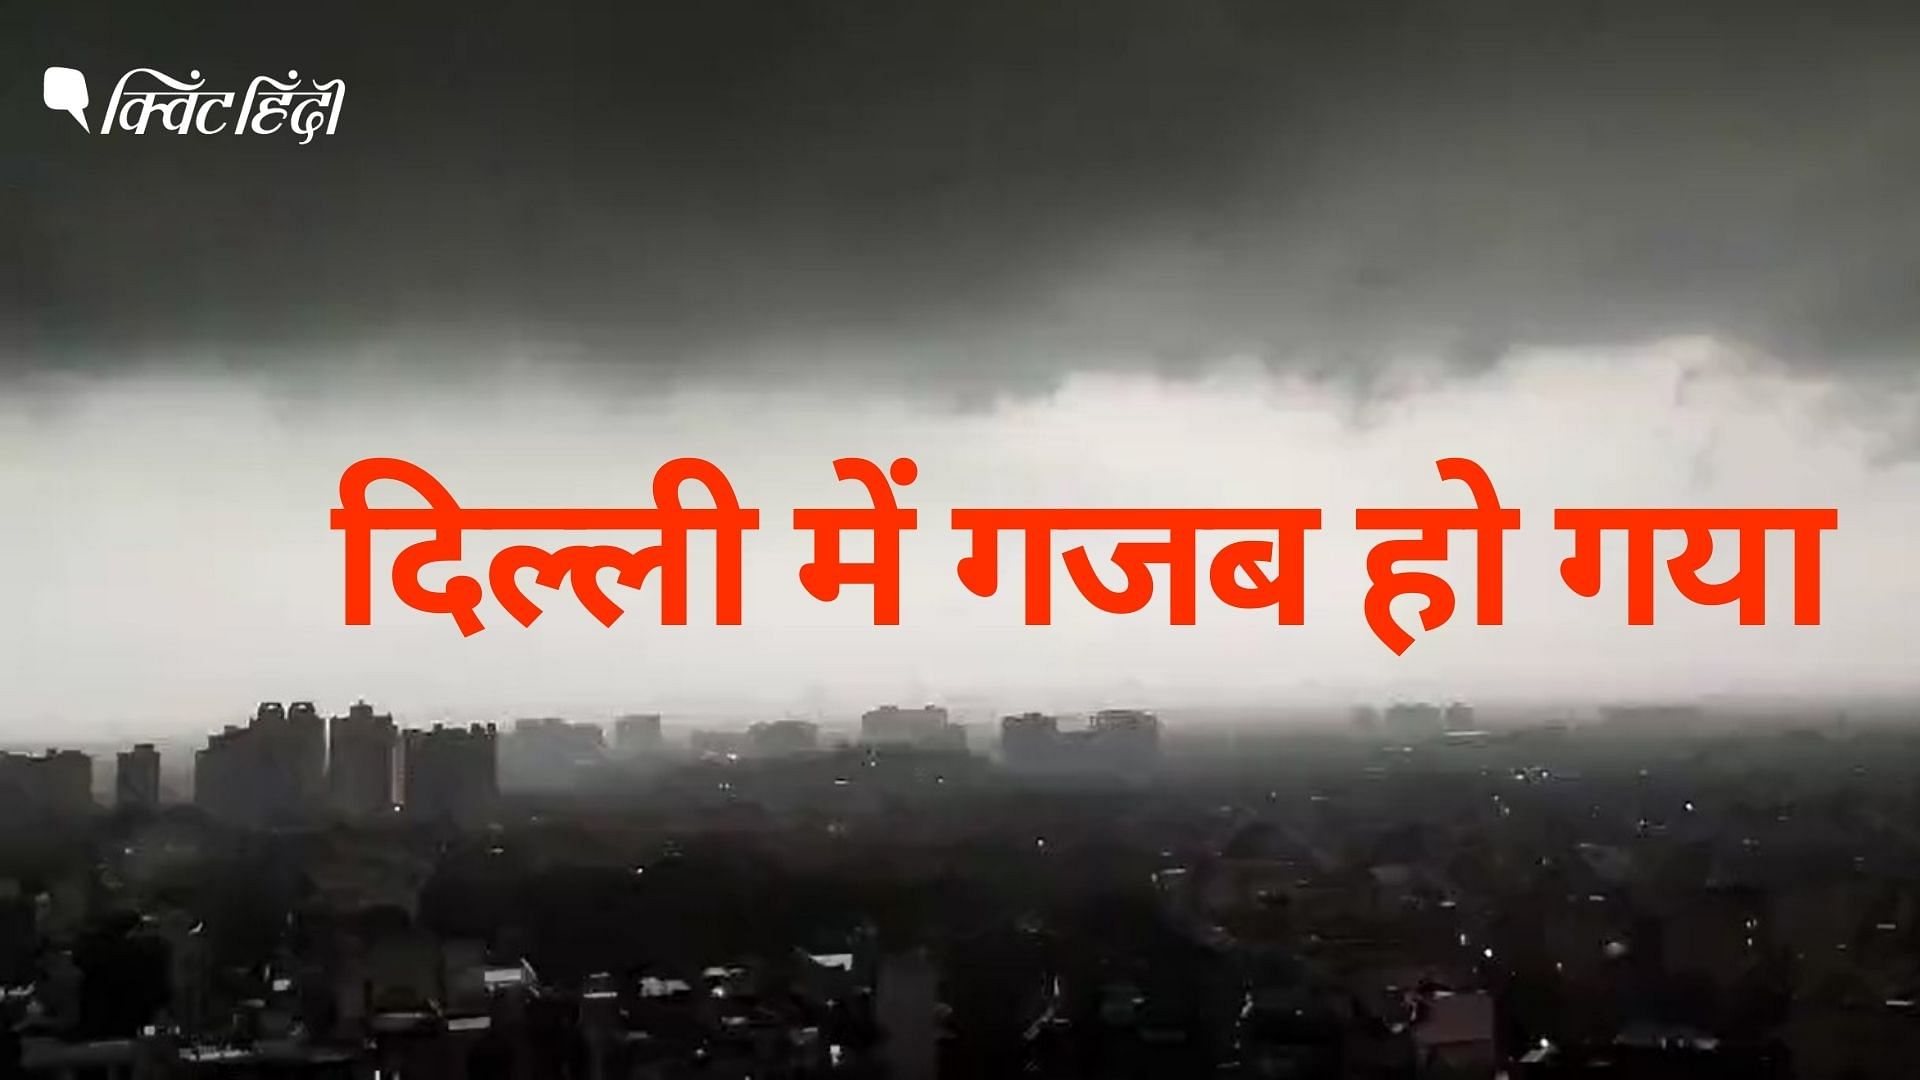 <div class="paragraphs"><p>दिल्ली का बदला मौसम | Heavy Rain in Delhi NCR</p></div>